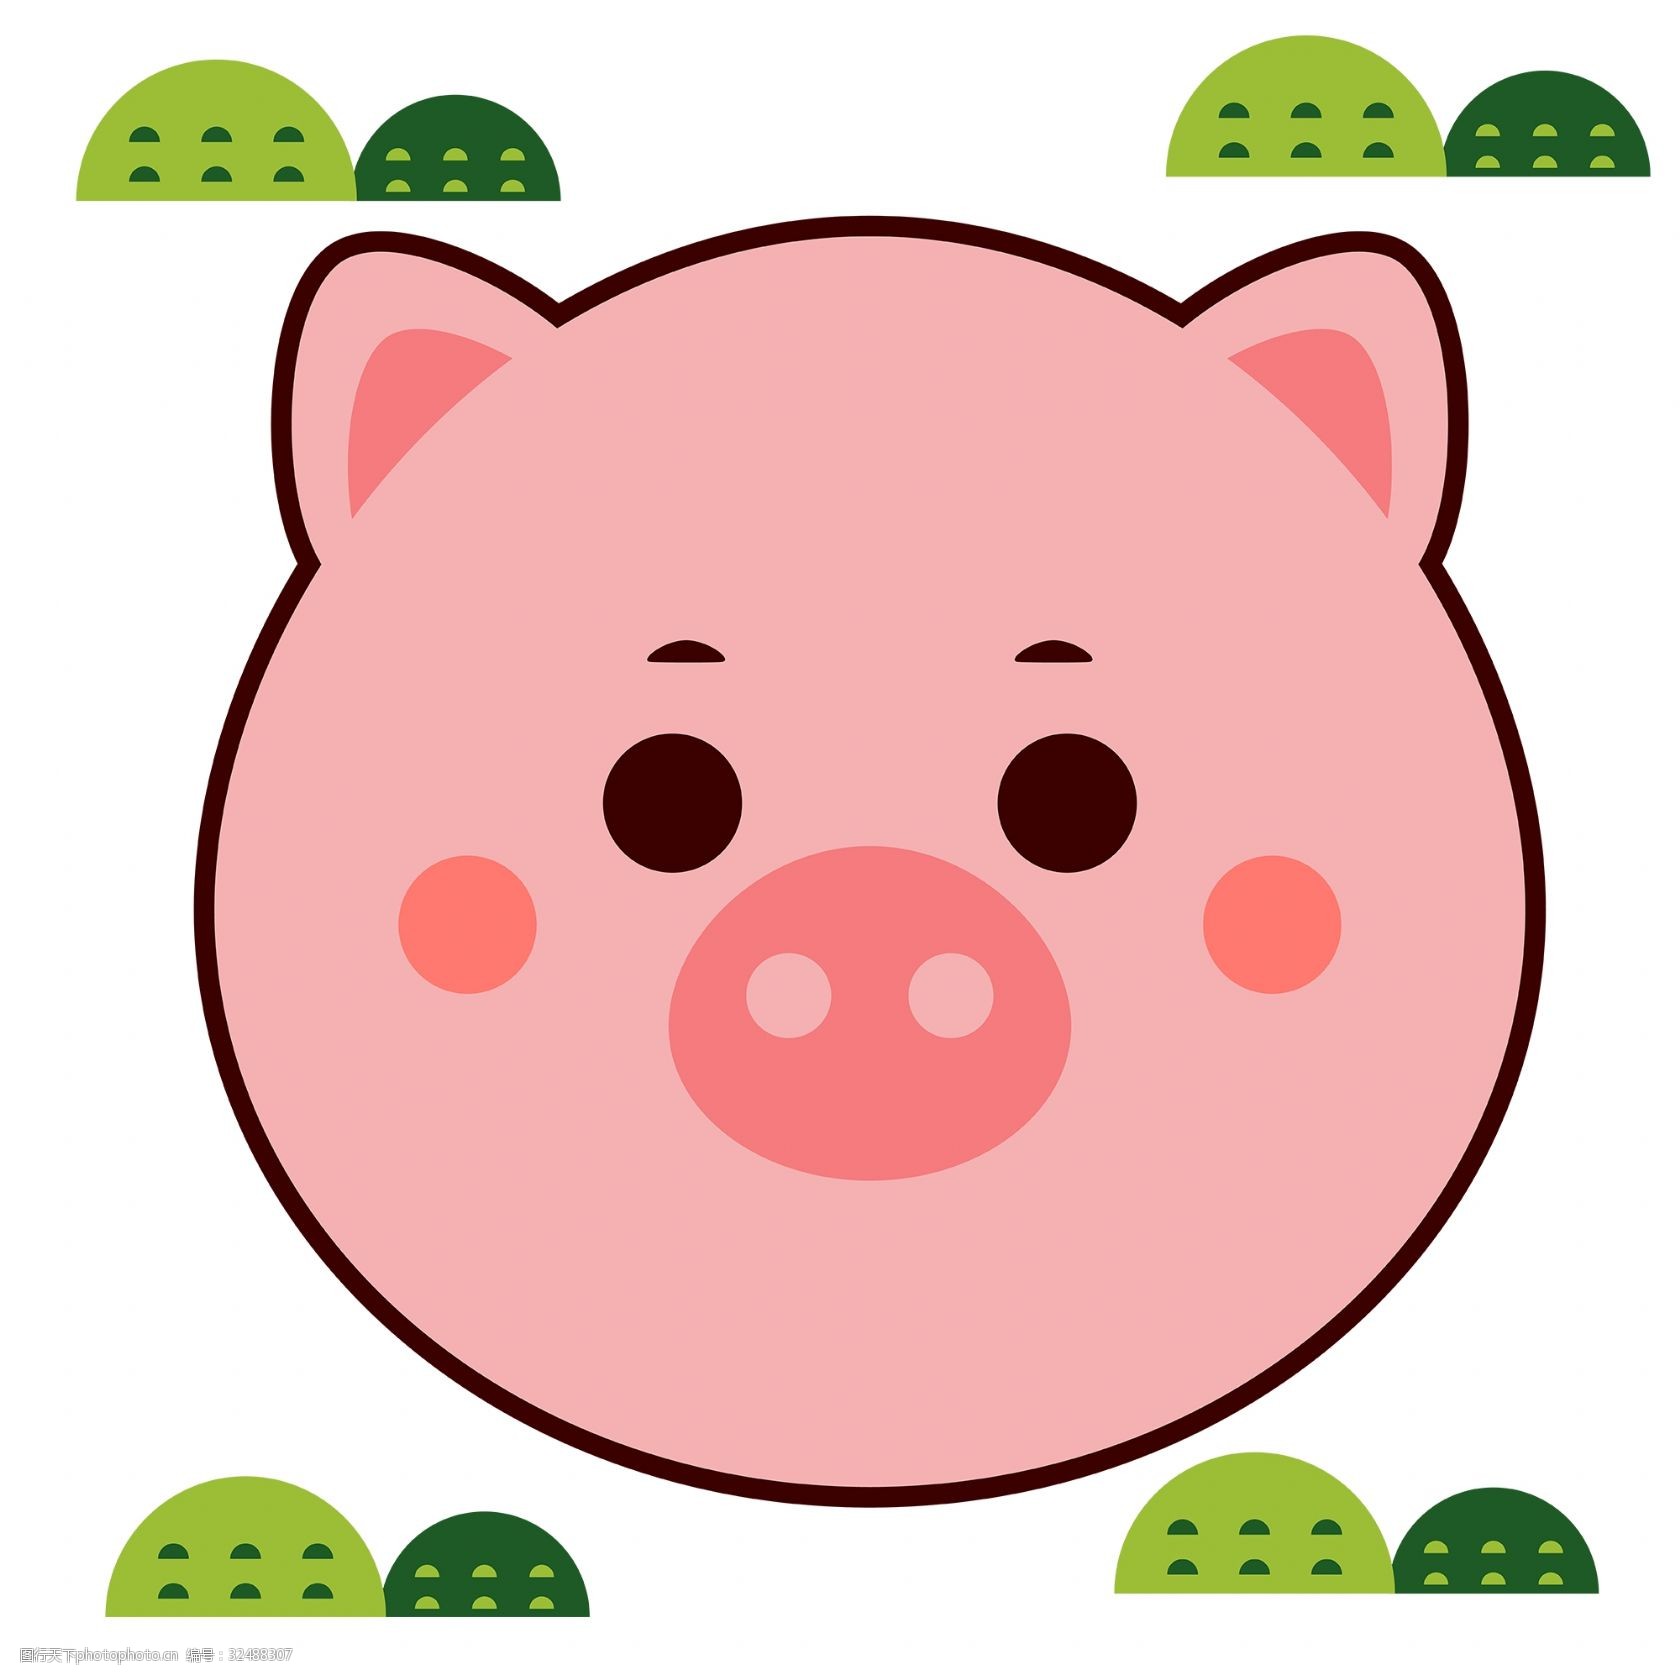 猪猪卡通头像素材 原创 矢量 ai 卡通 创意 可爱 动物 猪猪 猪头